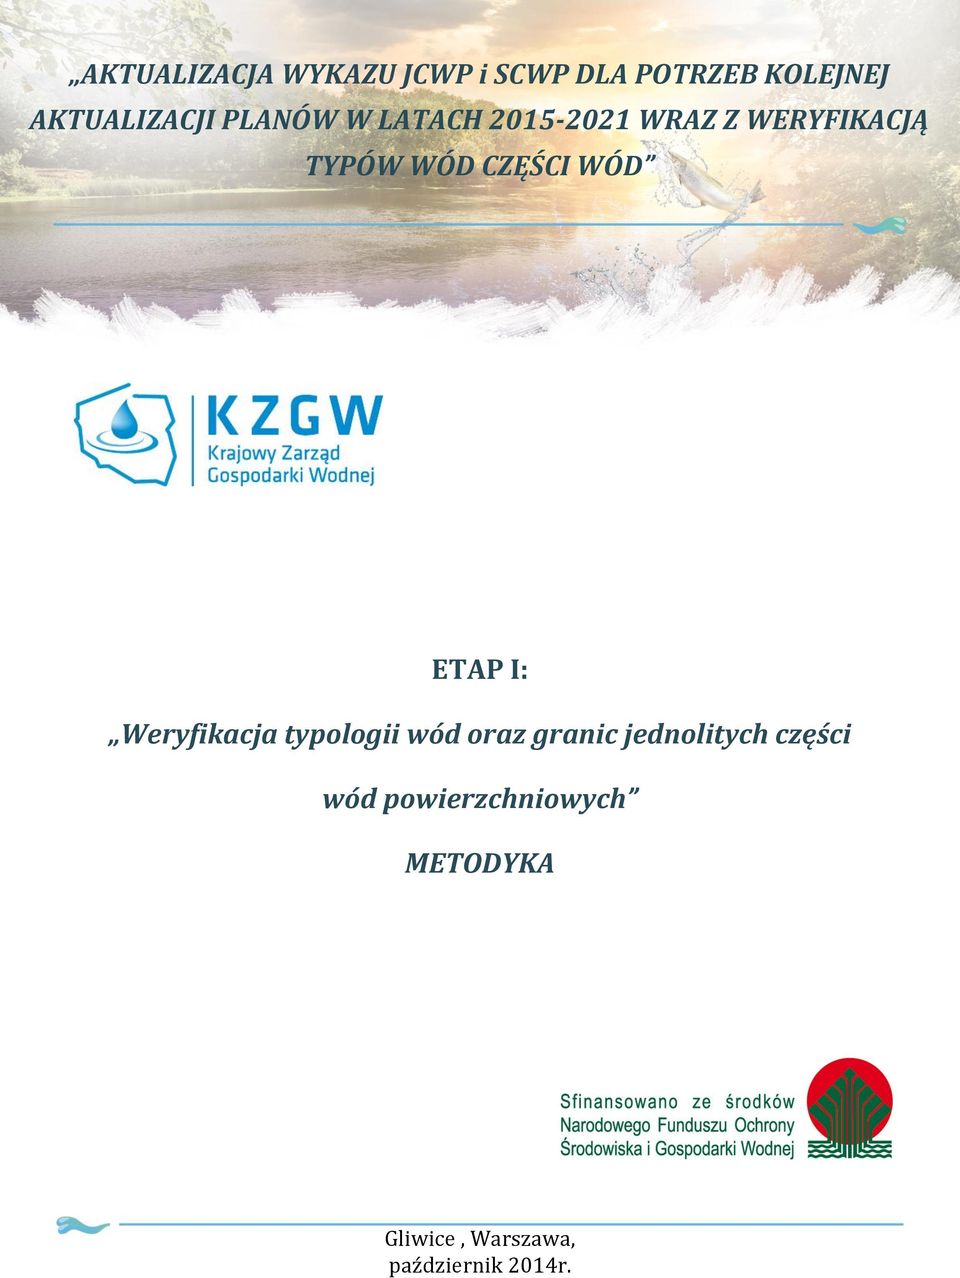 ETAP I: Weryfikacja typologii wód oraz granic jednolitych części